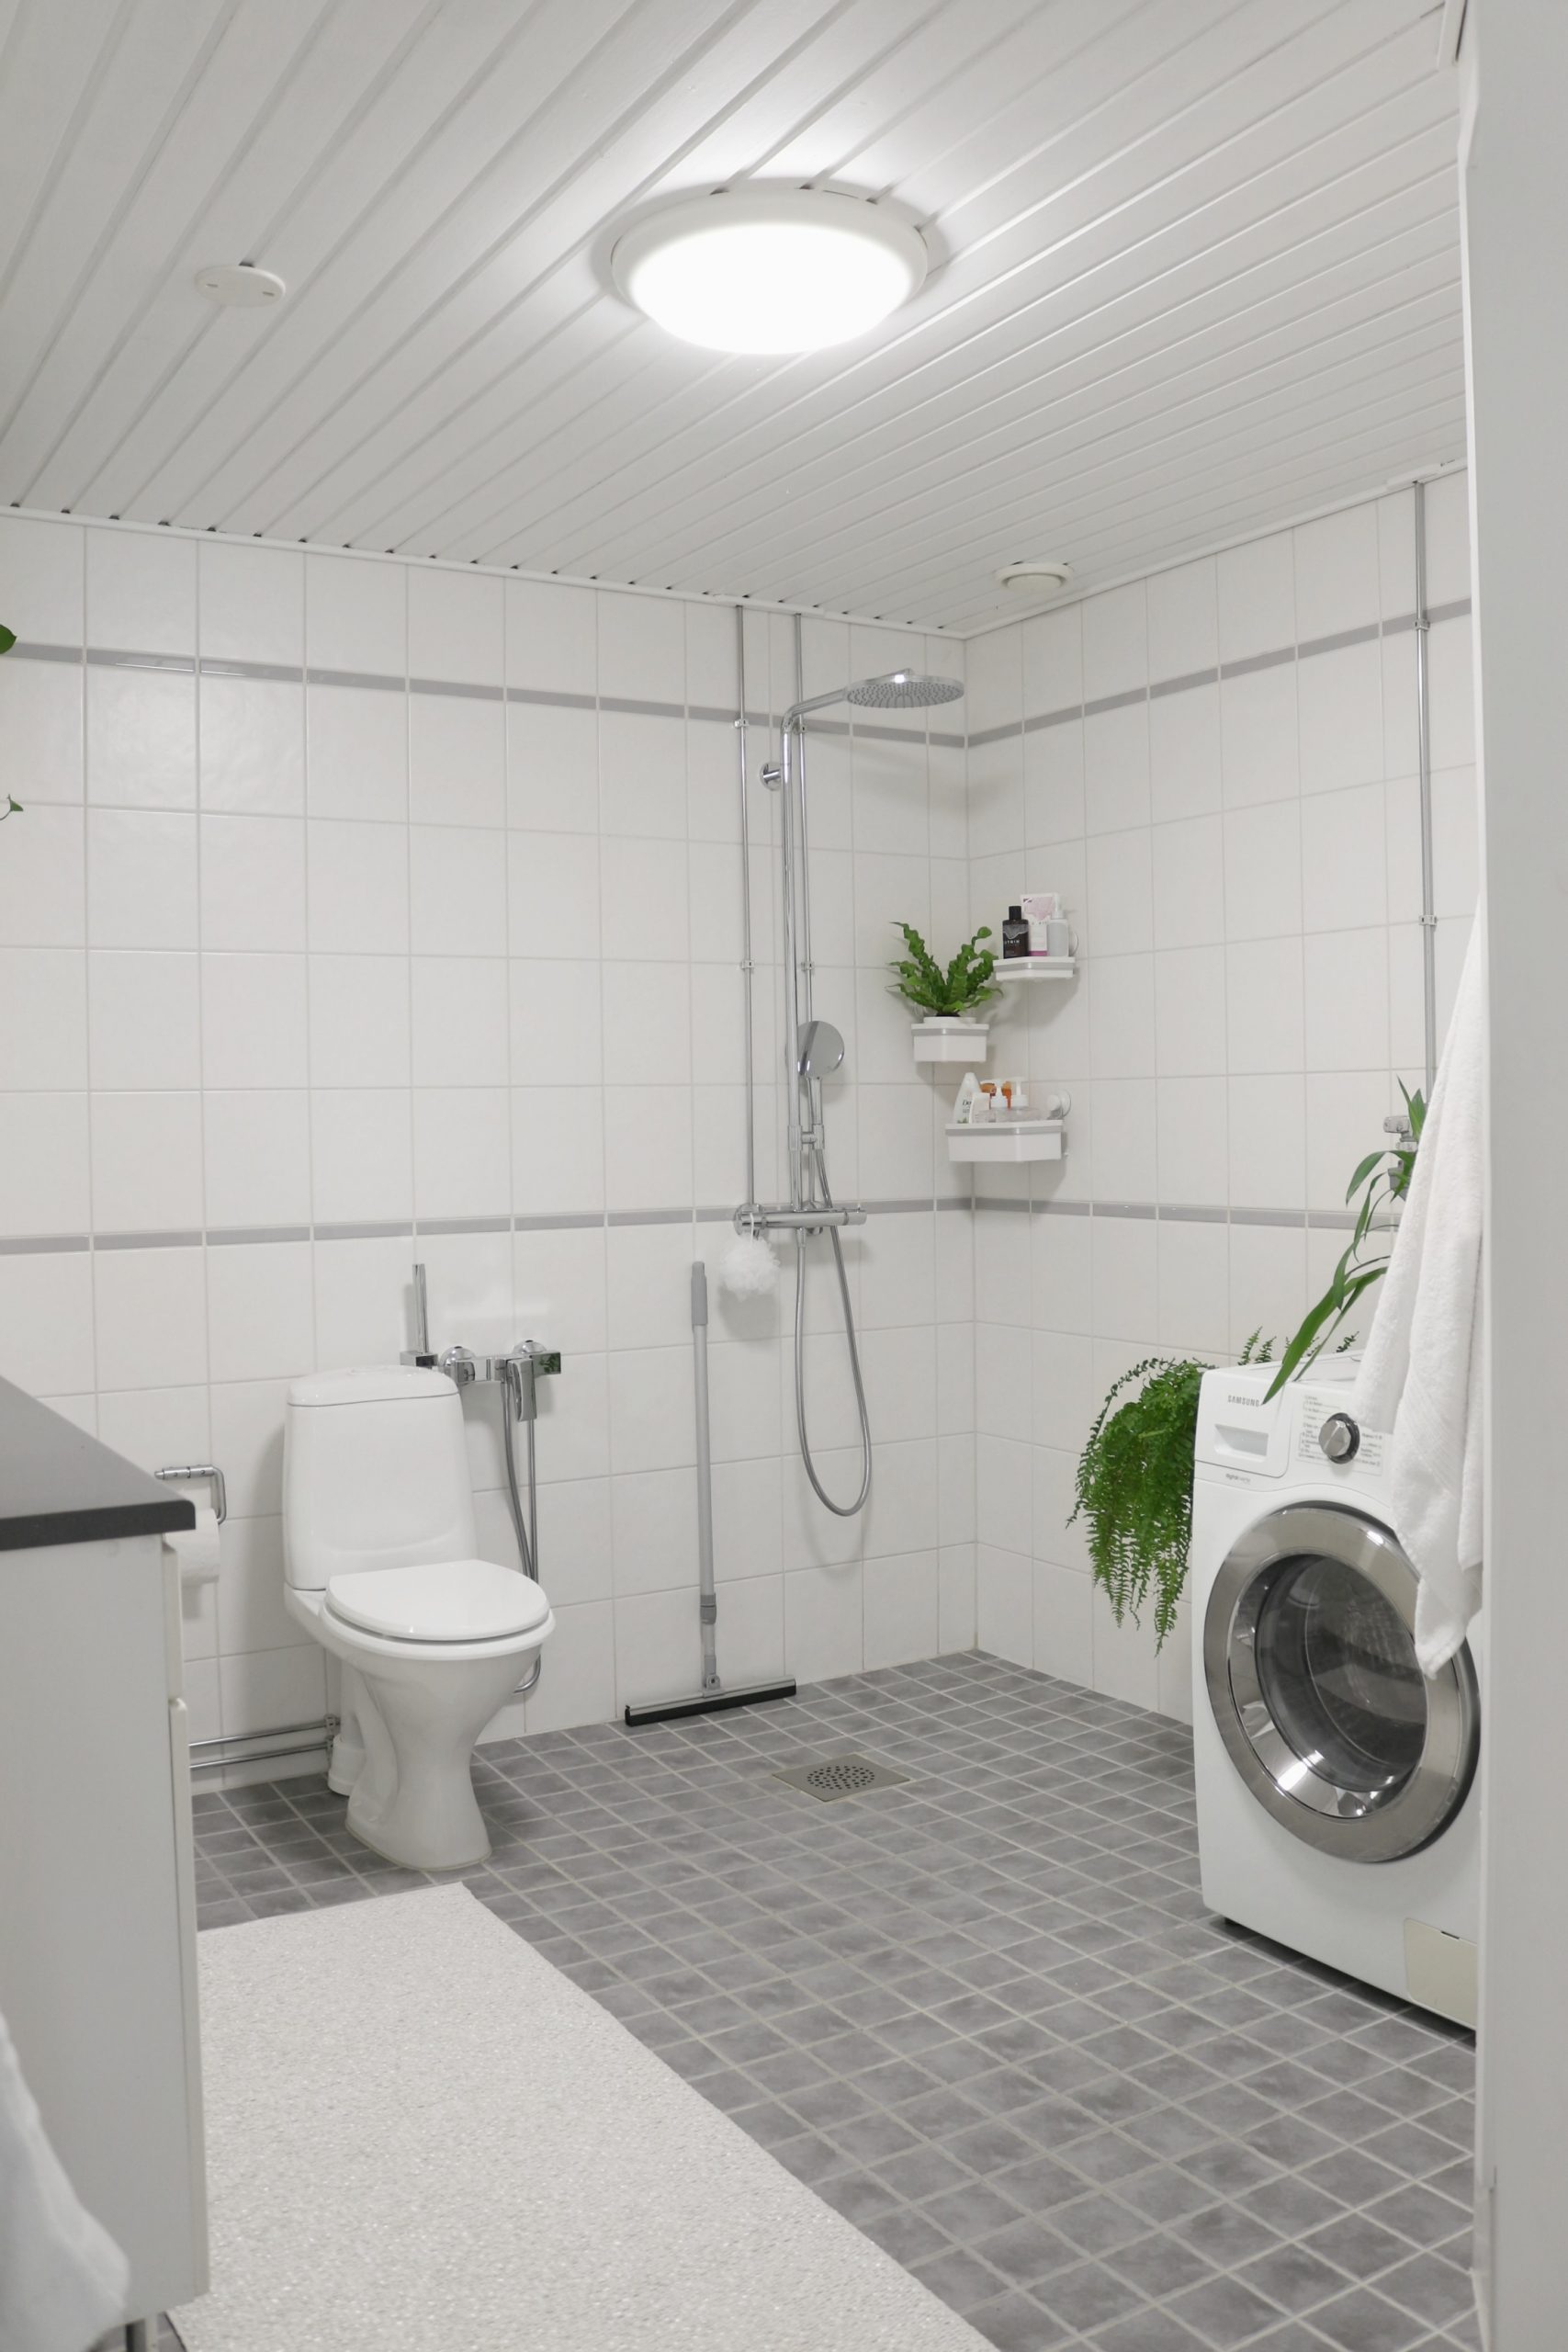 Kylpyhuoneremontti - Uusi ilme kylpyhuoneeseen kustannustehokkaasti Omakotivalkoinen